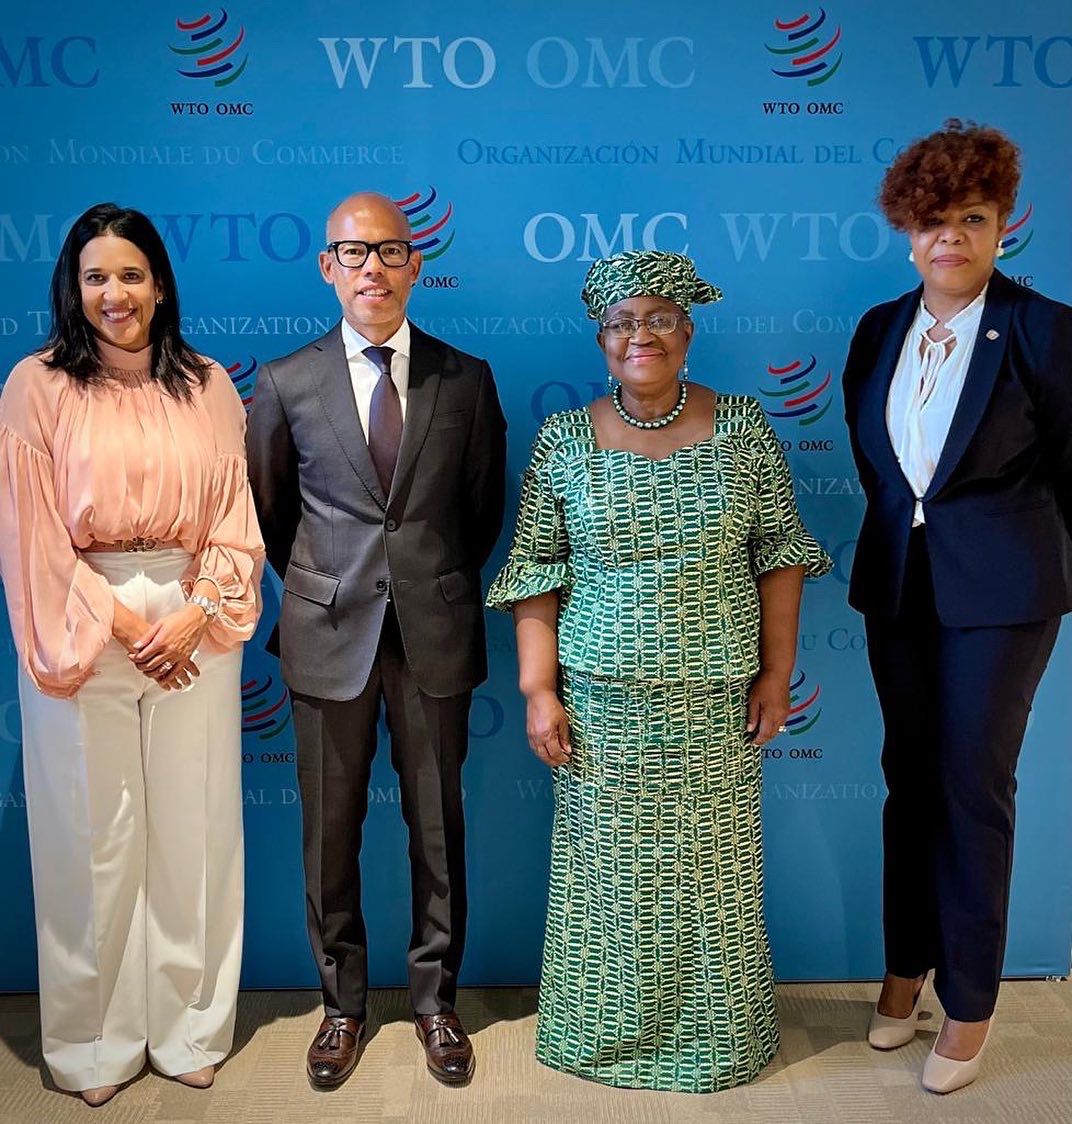 Embajador Sánchez-Fung presenta Cartas Credenciales a Dra. Ngozi Okonjo-Iweala, Directora General de OMC